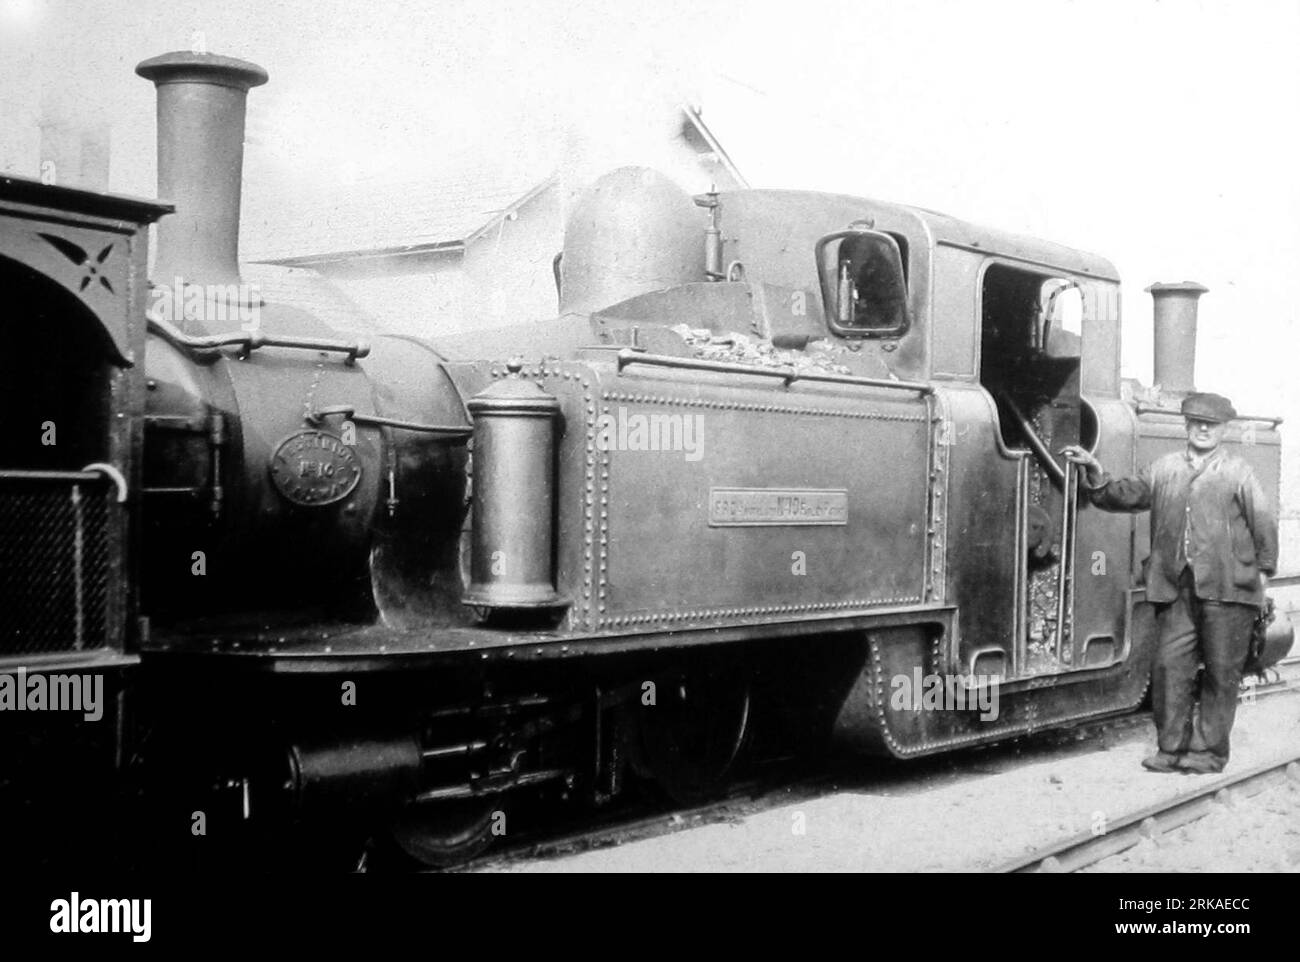 Moteur no 10 Merddyn Emrys, Ffestiniog Railway, pays de Galles, époque victorienne Banque D'Images